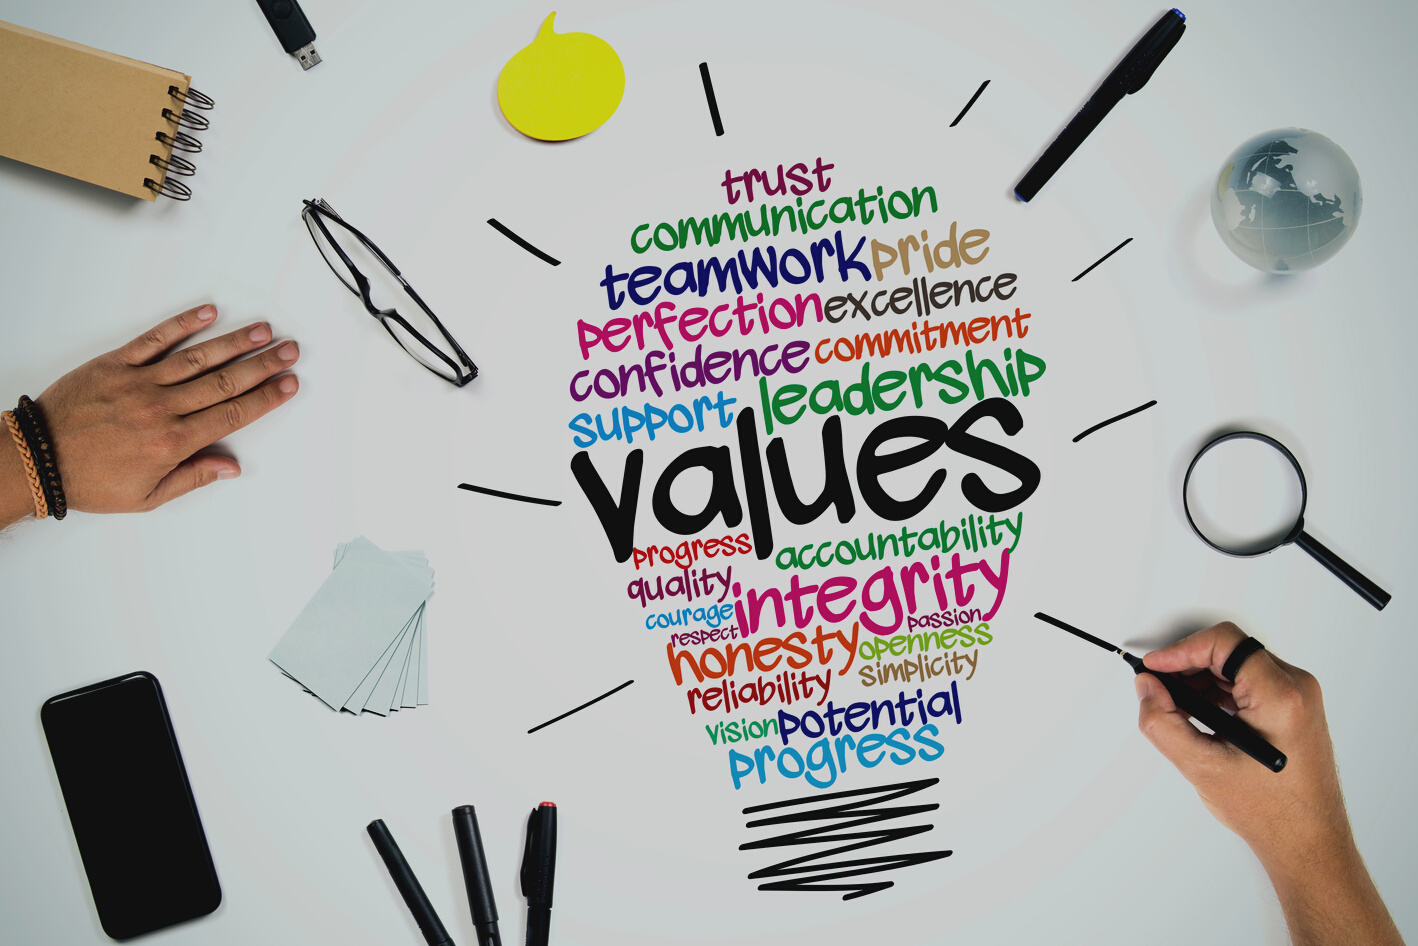 Values Business concept